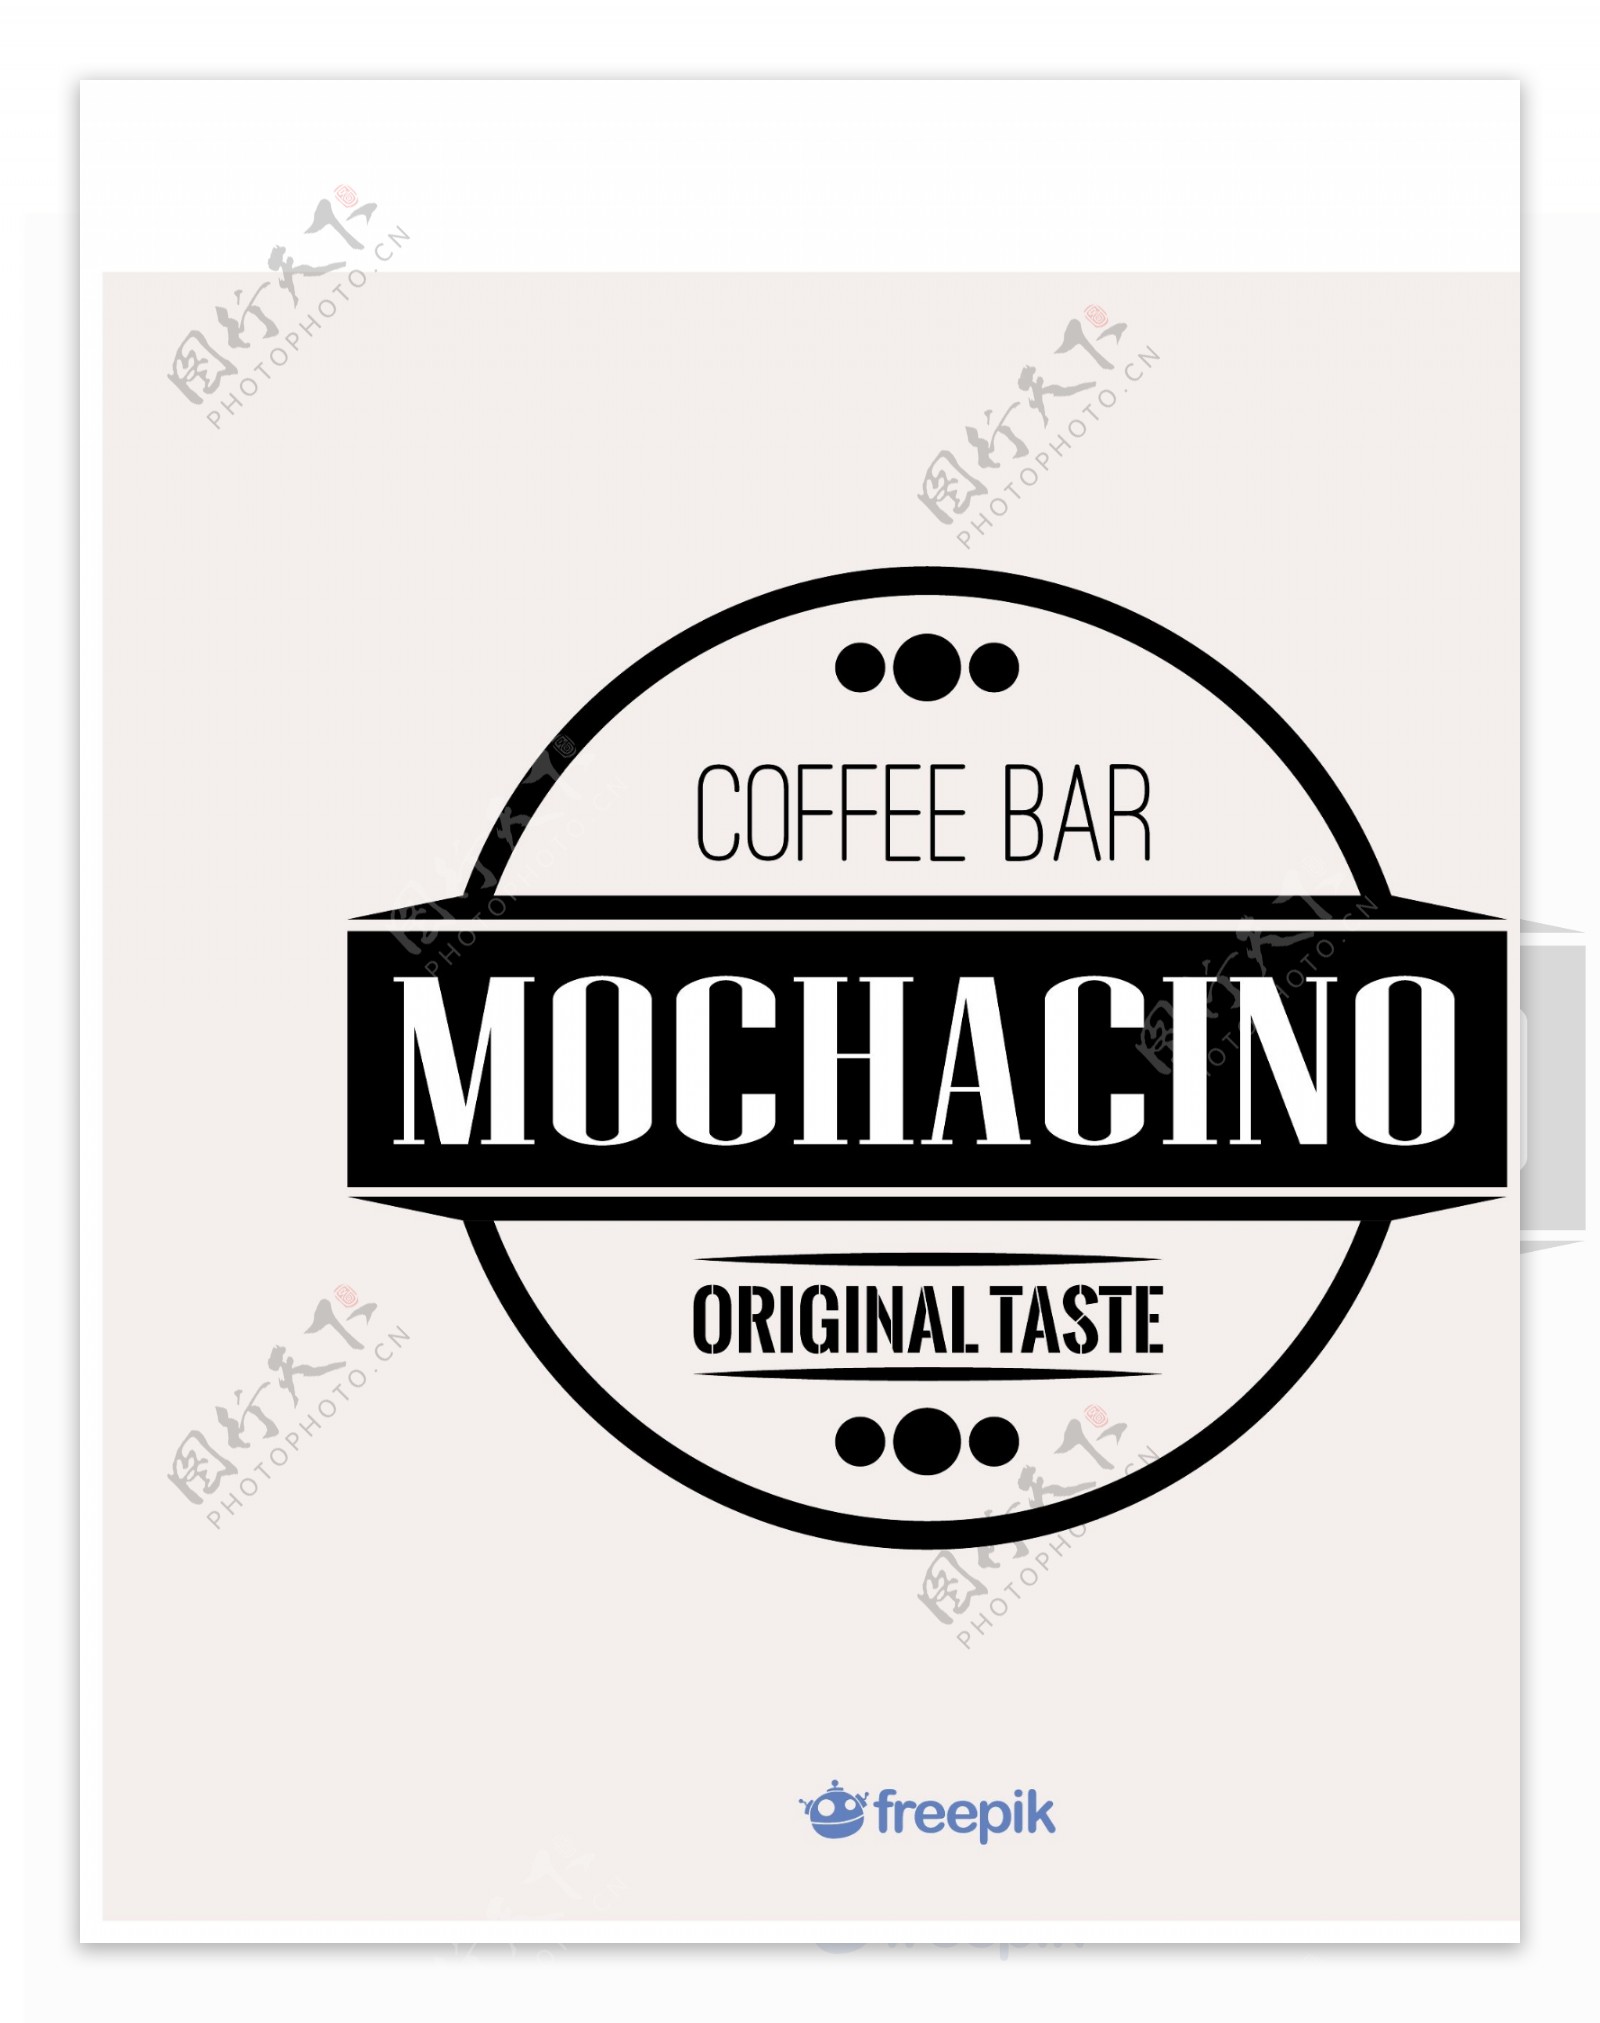 咖啡吧摩卡奇诺标签矢量素材